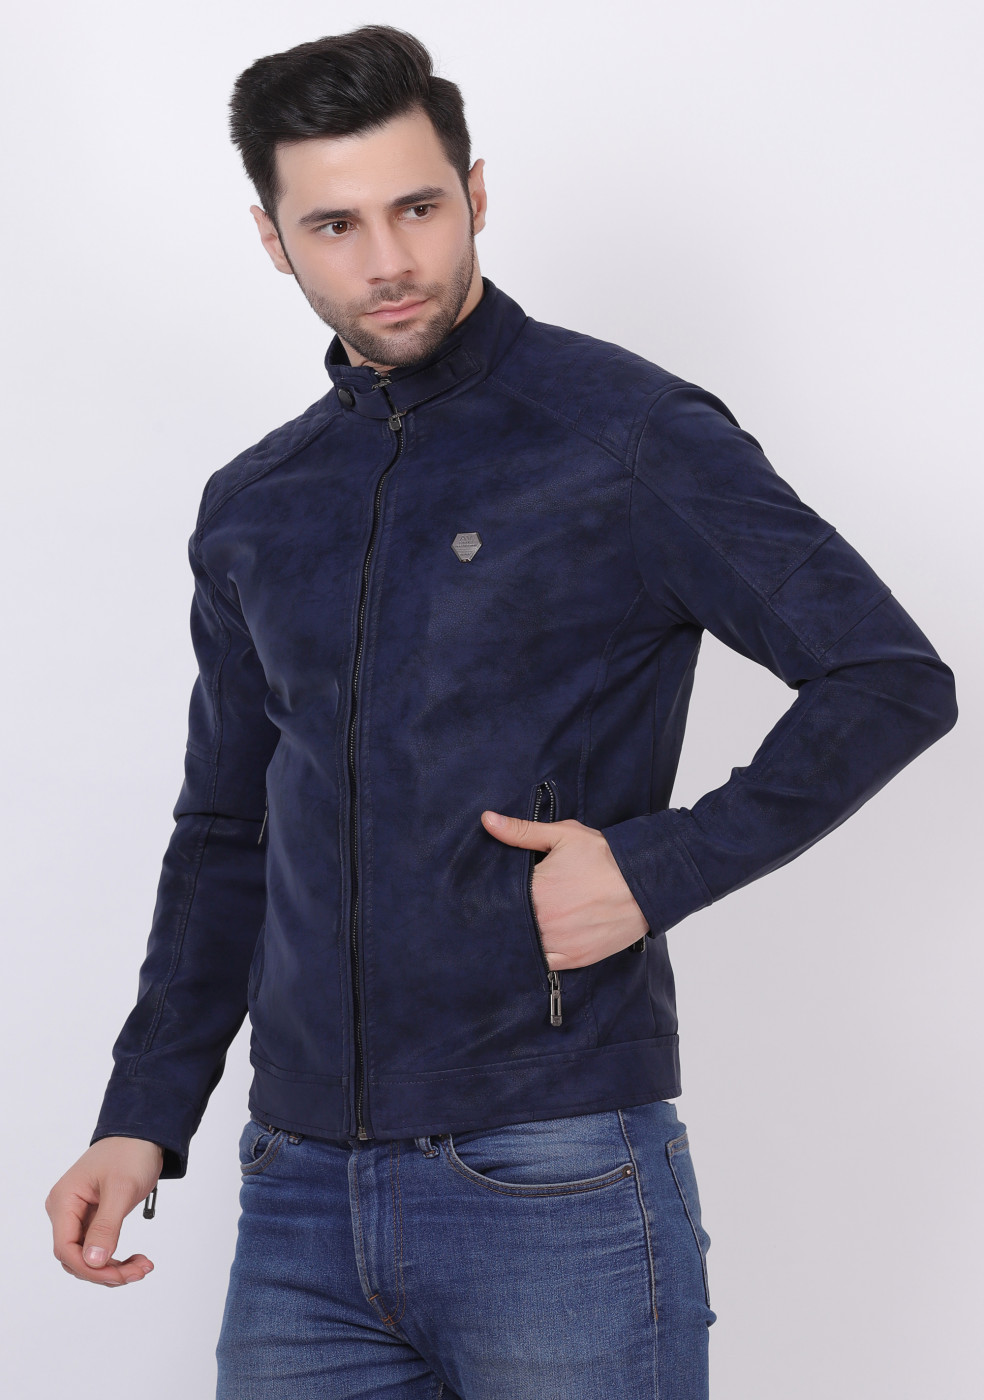 Men Blue Stylish Leather Jacket